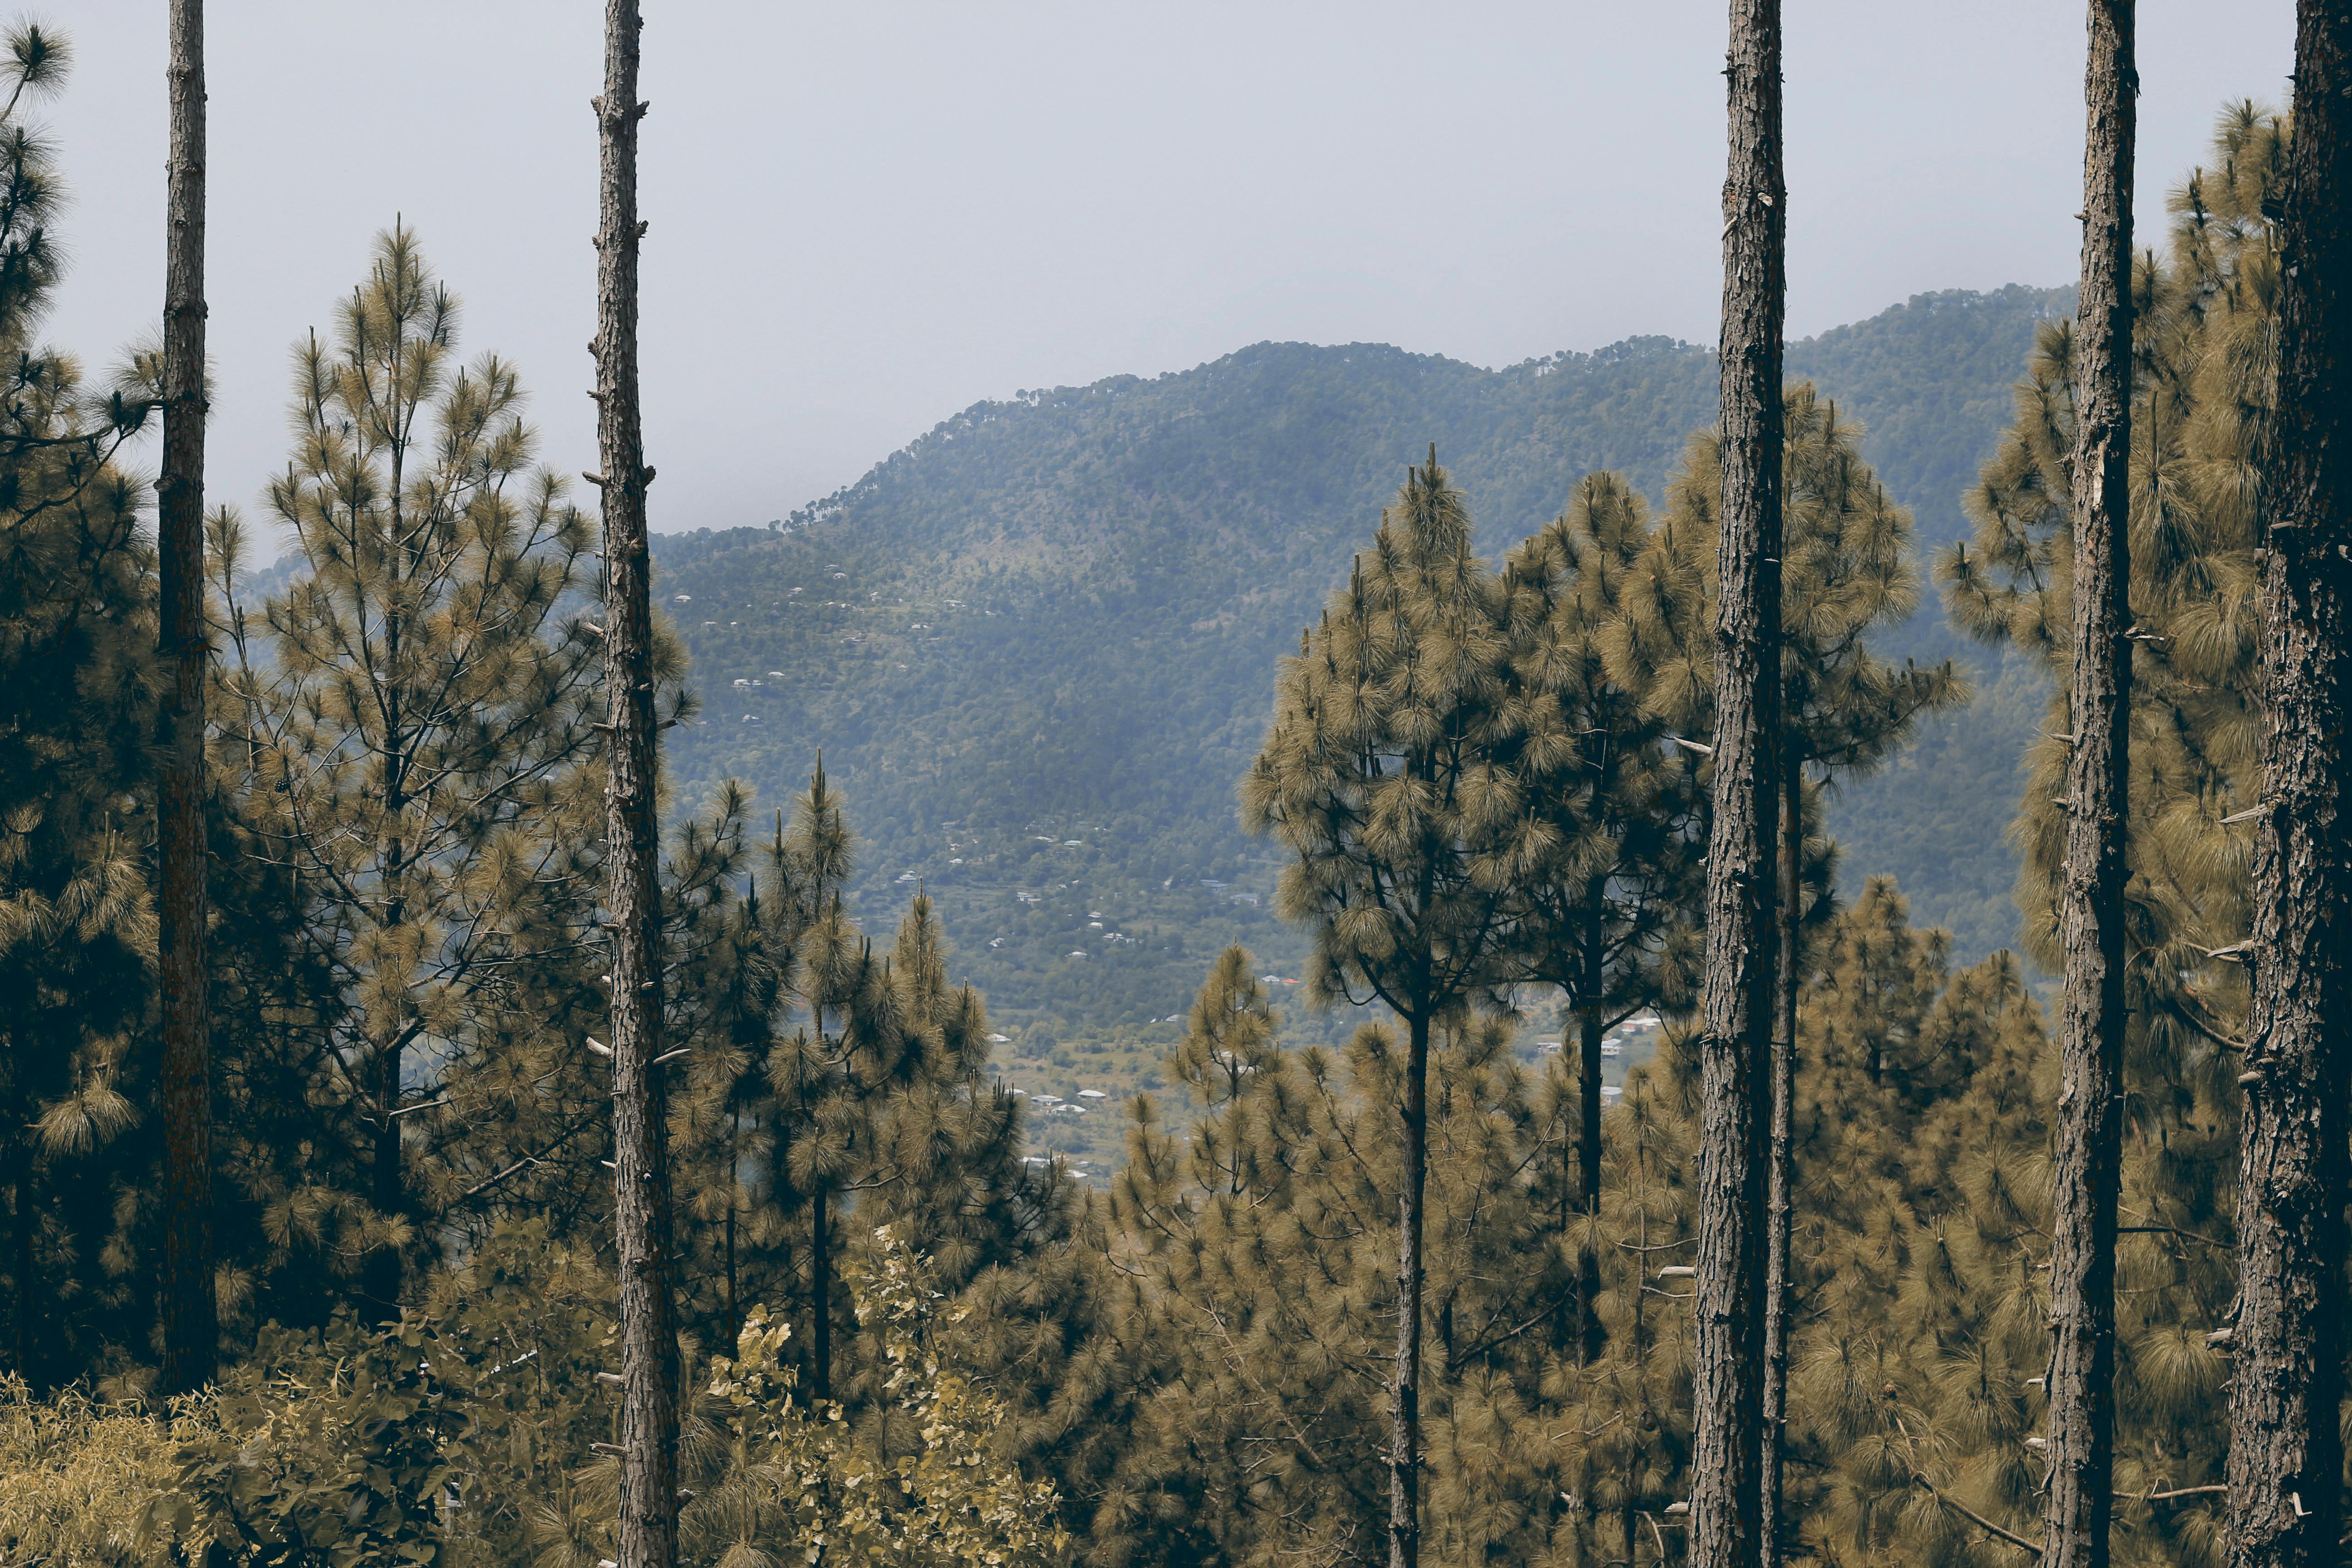 Trees On Mountain · Free Stock Photo